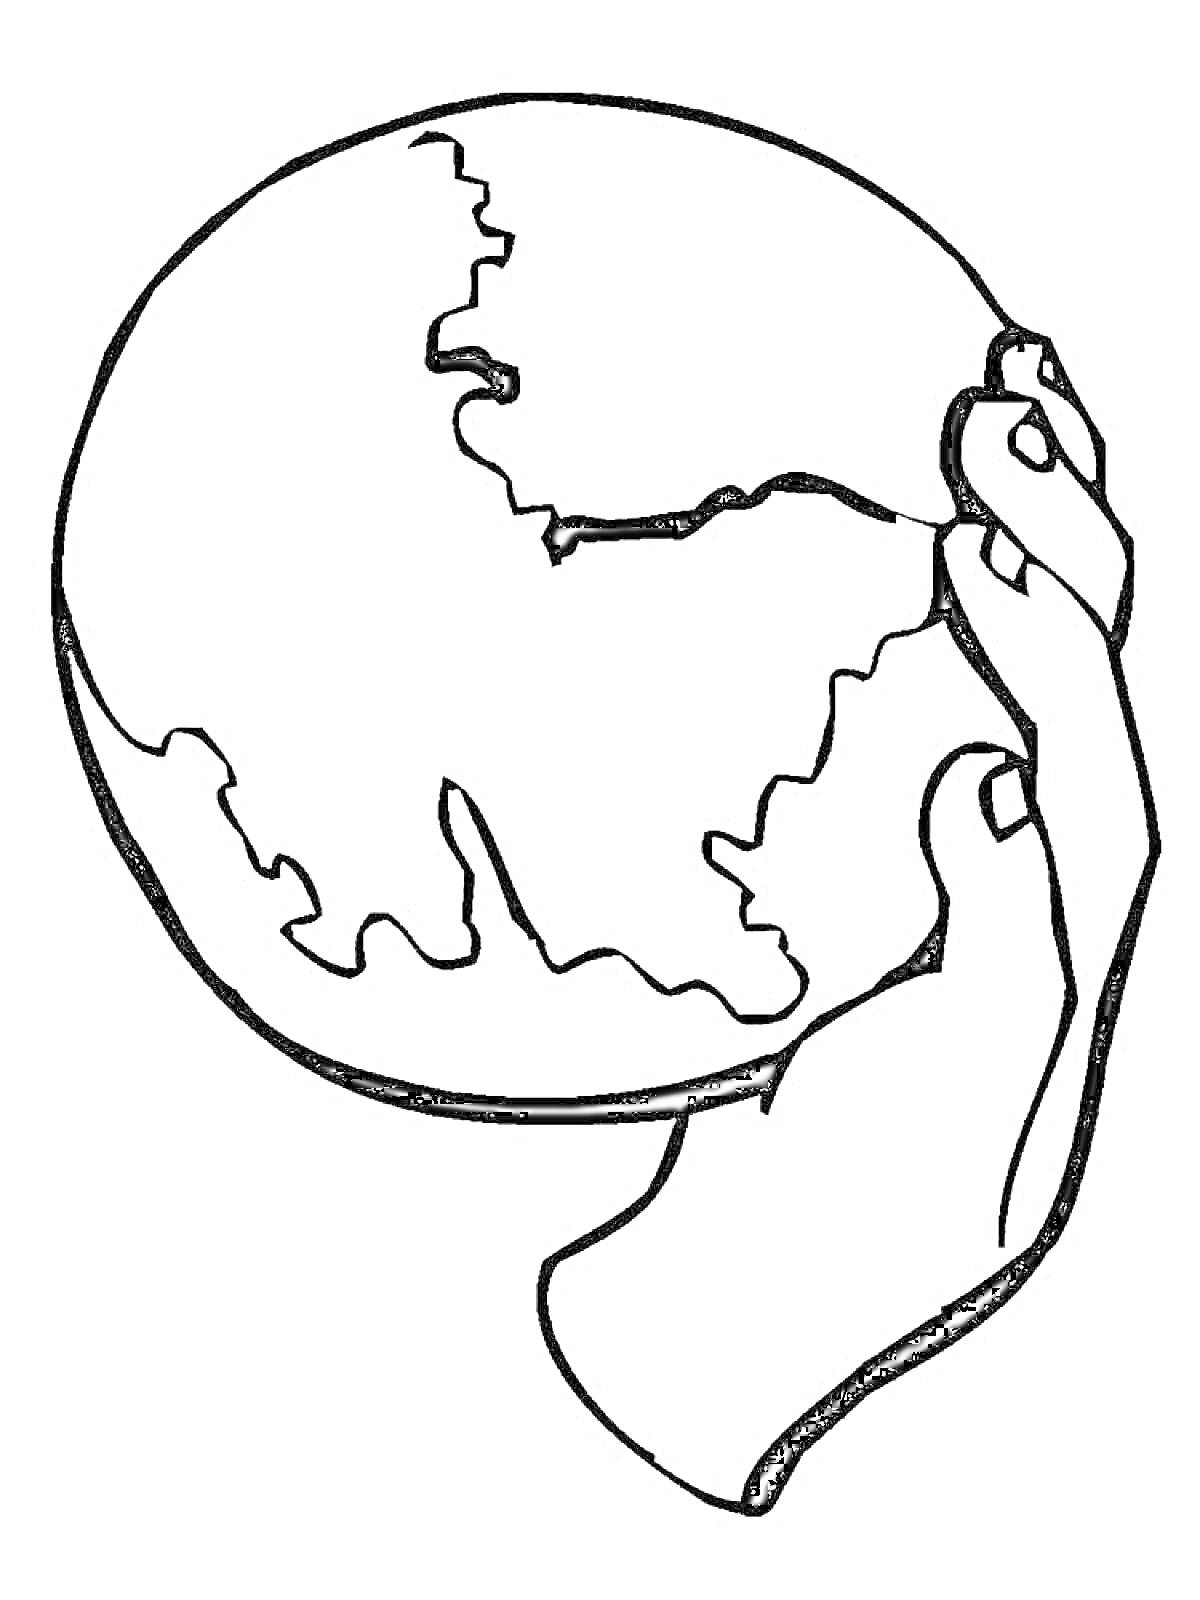 Две руки держат земной шар